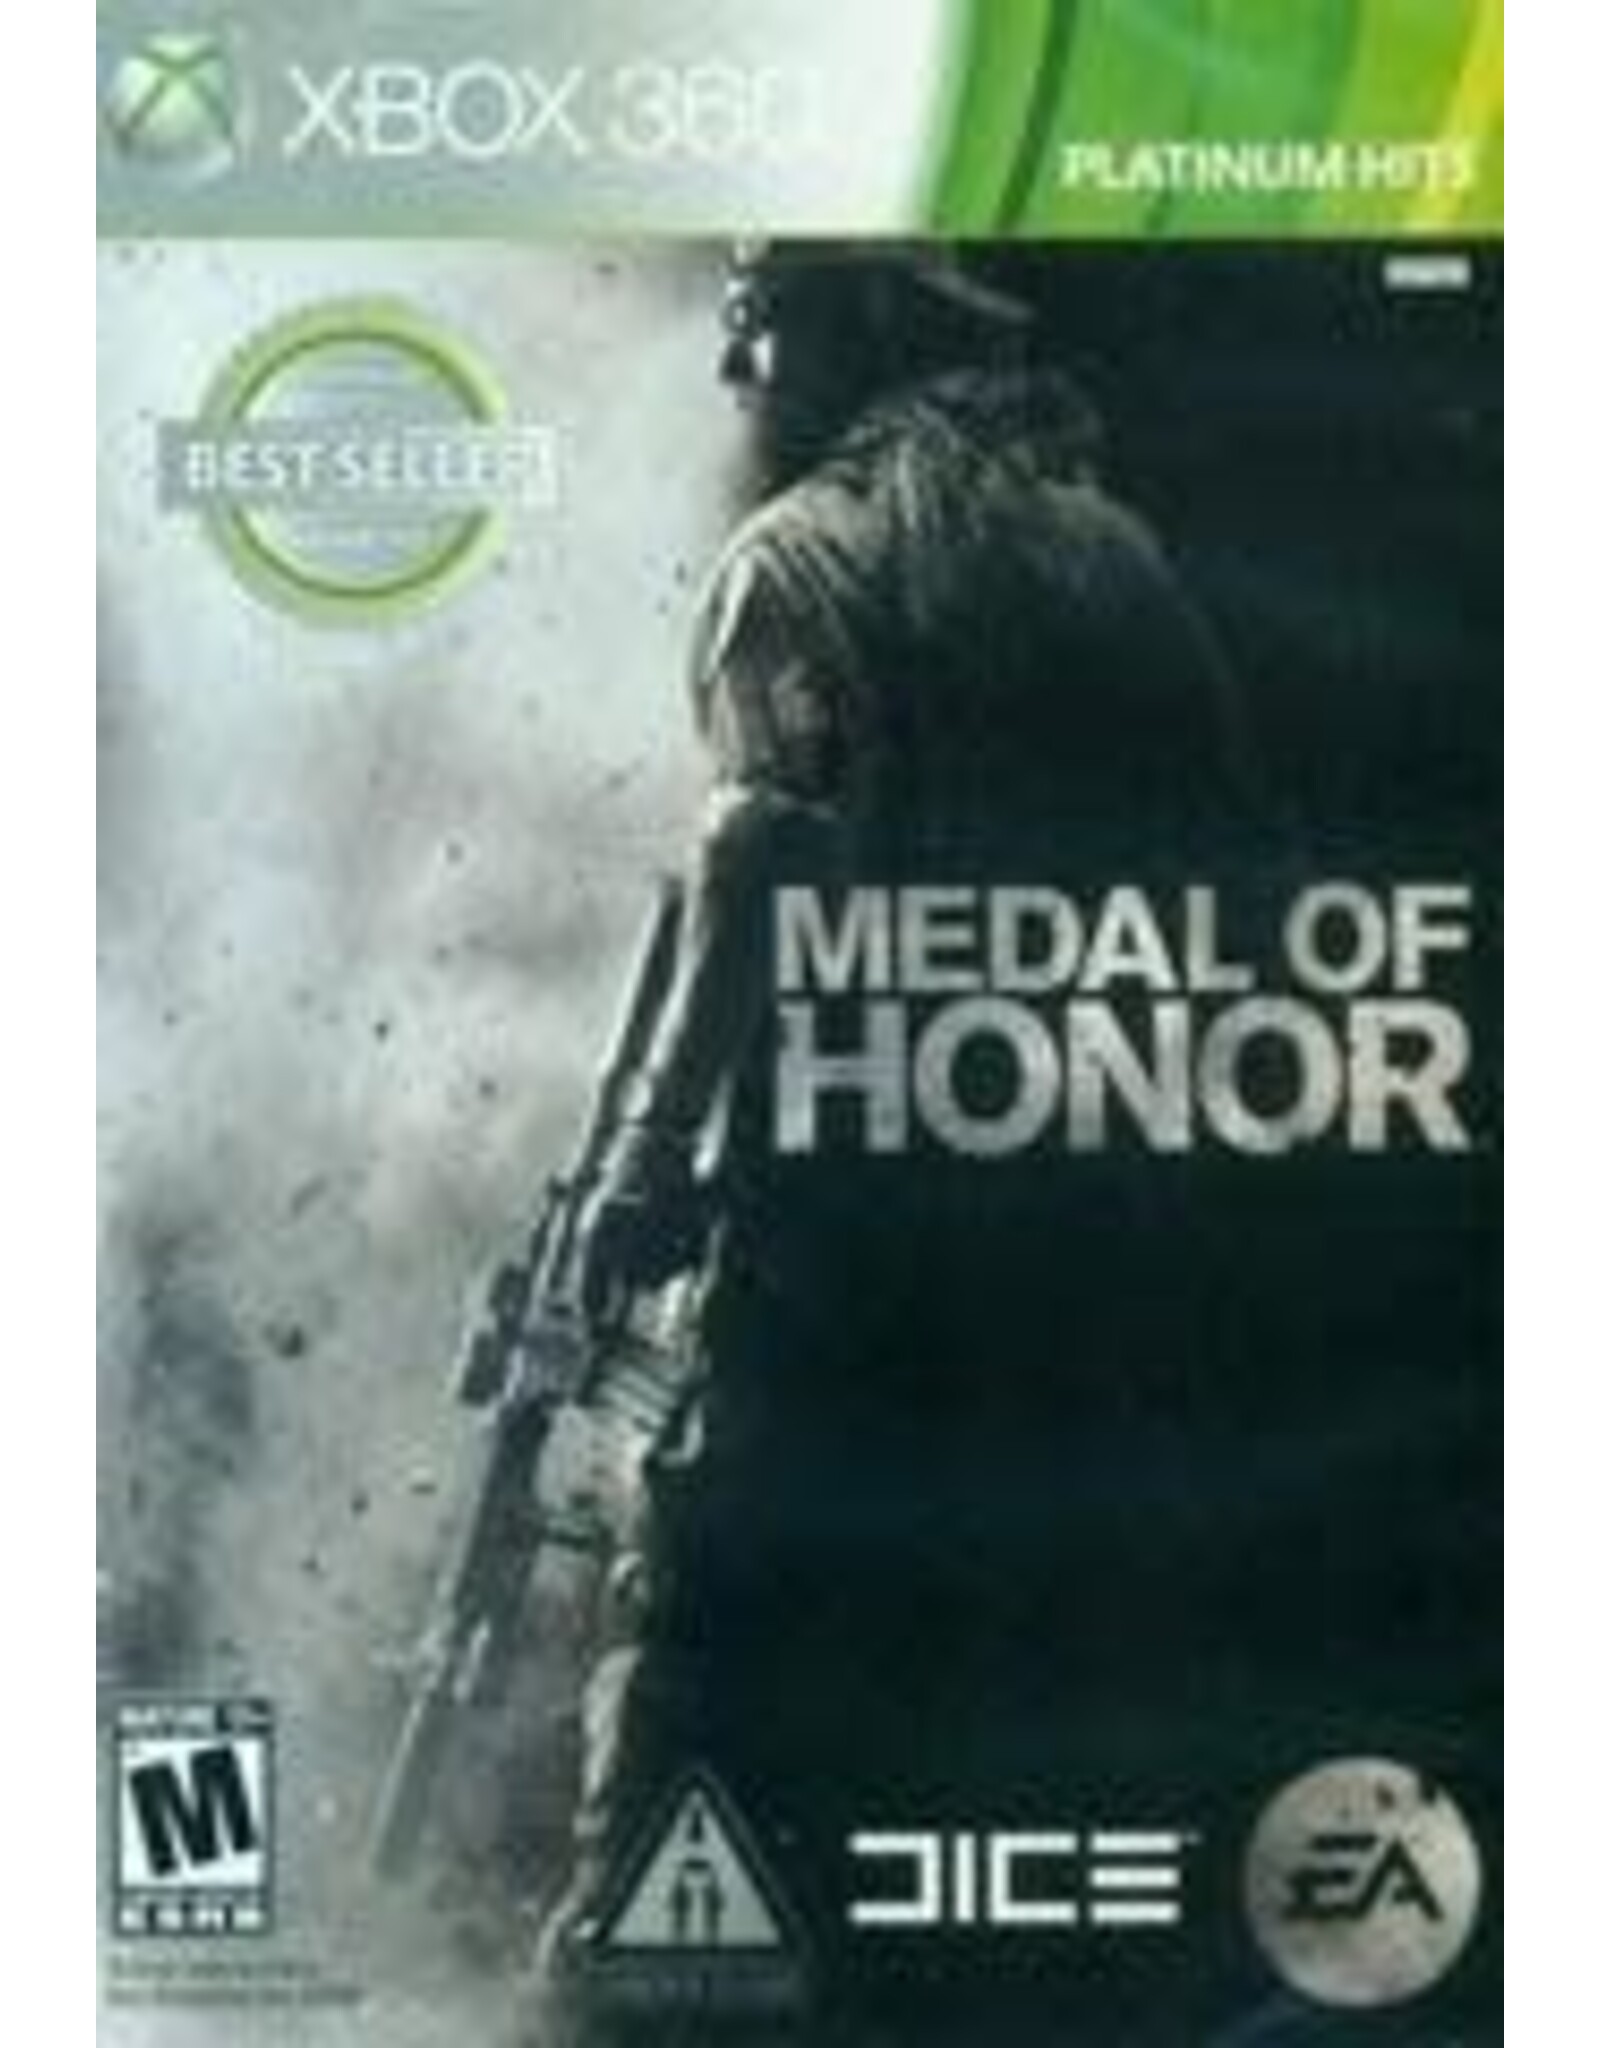 Xbox 360 Medal of Honor (Platinum Hits, CiB)